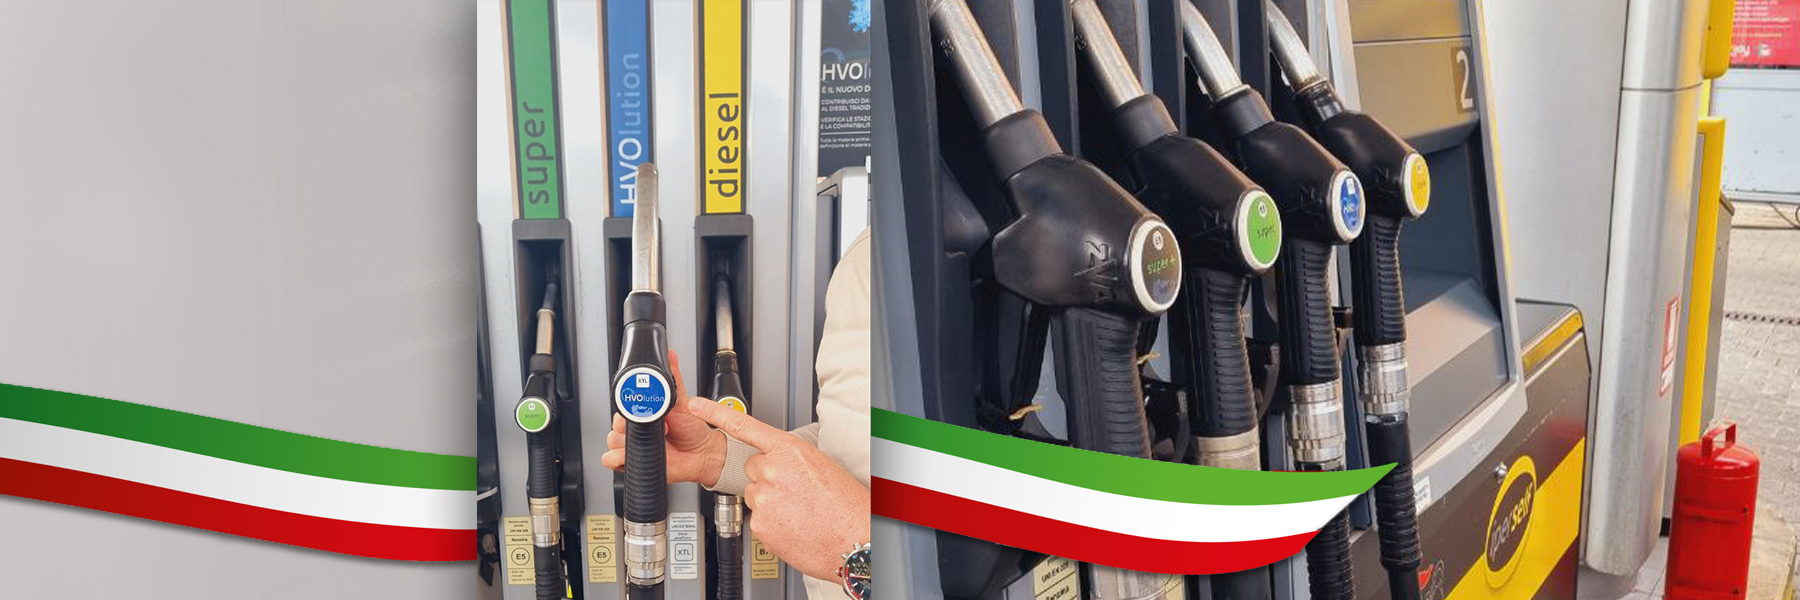 HVO100 Diesel tanken in Italien – Wie eine erfolgreiche Markteinführung gelingen kann